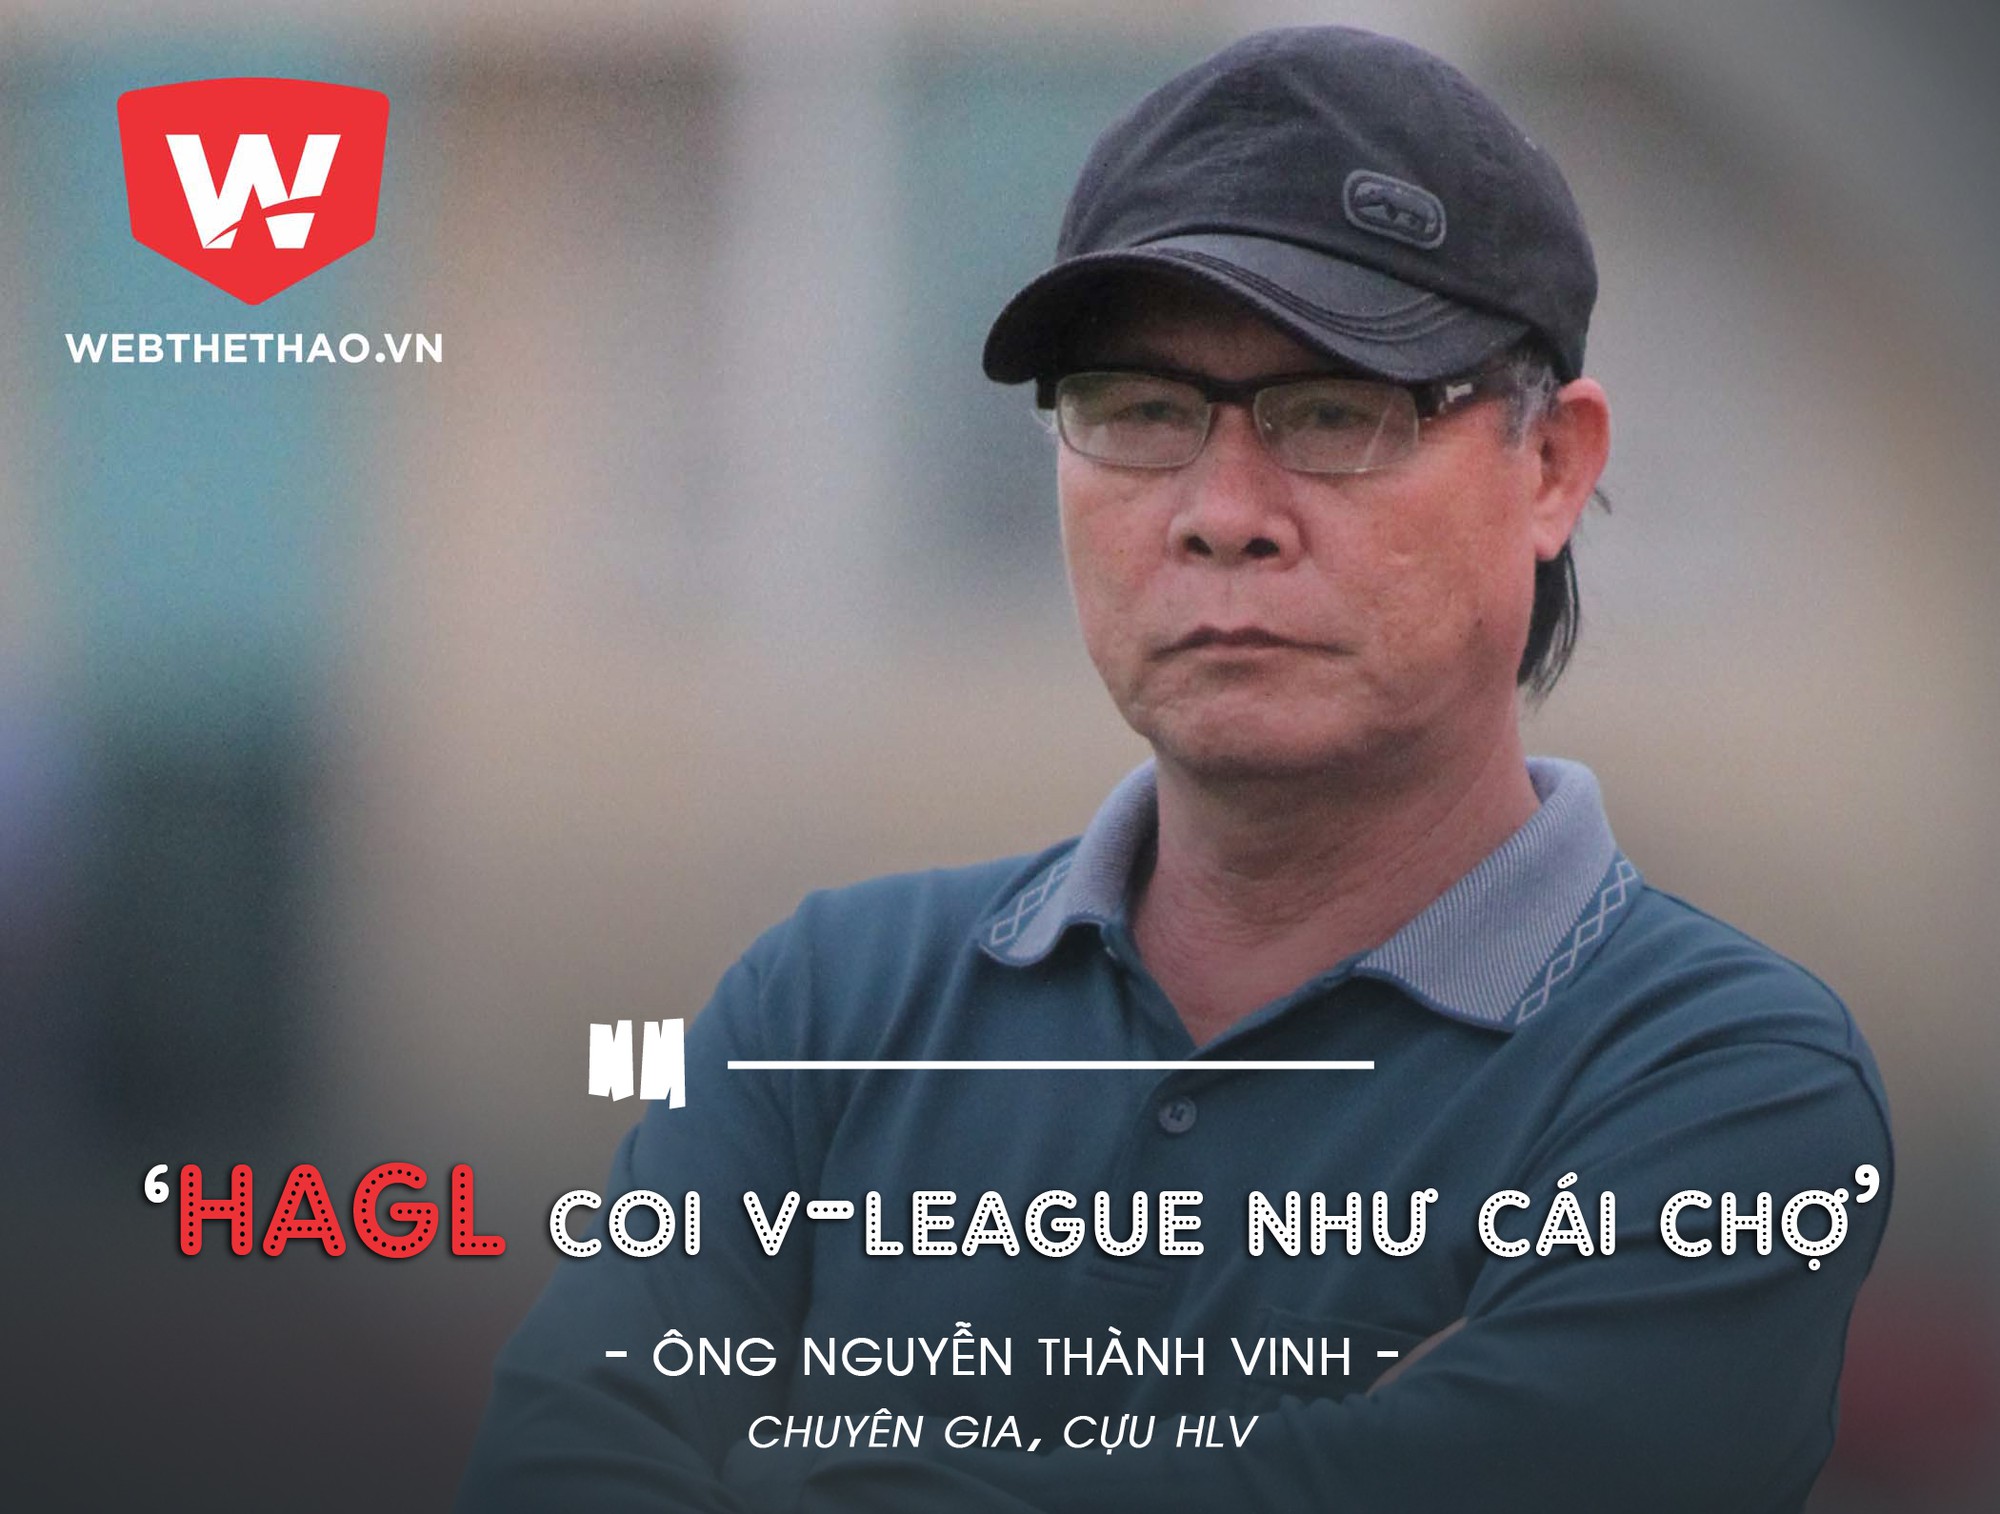 Chuyên gia Nguyễn Thành Vinh nói về việc nhiều thành viên CLB HAGL phản ứng thiếu sự chuyên nghiệp trong trận thua 2-3 trước FLC Thanh Hóa. Ảnh: Trung Thu.